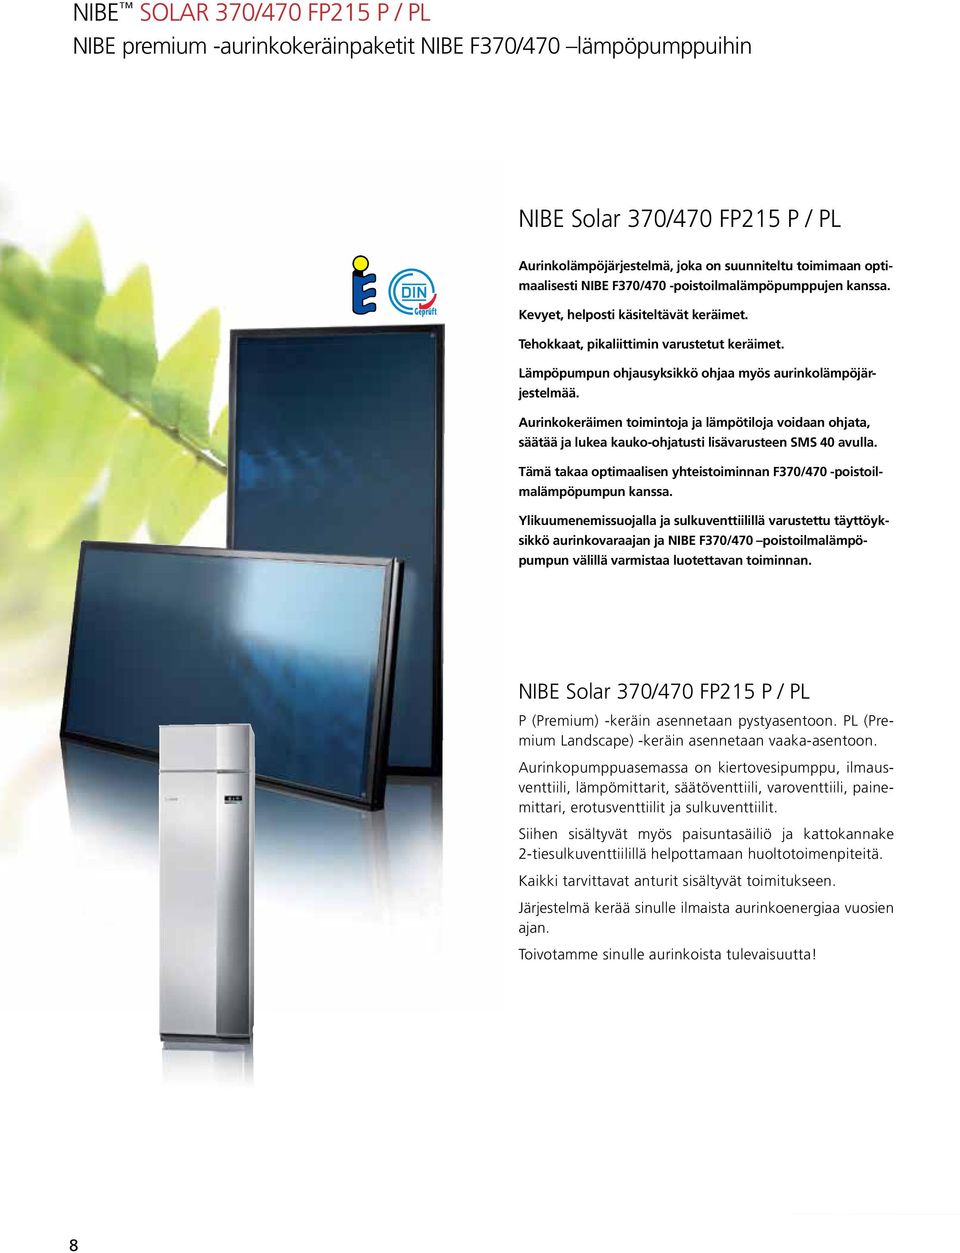 Aurinkokeräimen toimintoja ja lämpötiloja voidaan ohjata, säätää ja lukea kauko-ohjatusti lisävarusteen SMS 40 avulla. Tämä takaa optimaalisen yhteistoiminnan F370/470 -poistoilmalämpöpumpun kanssa.